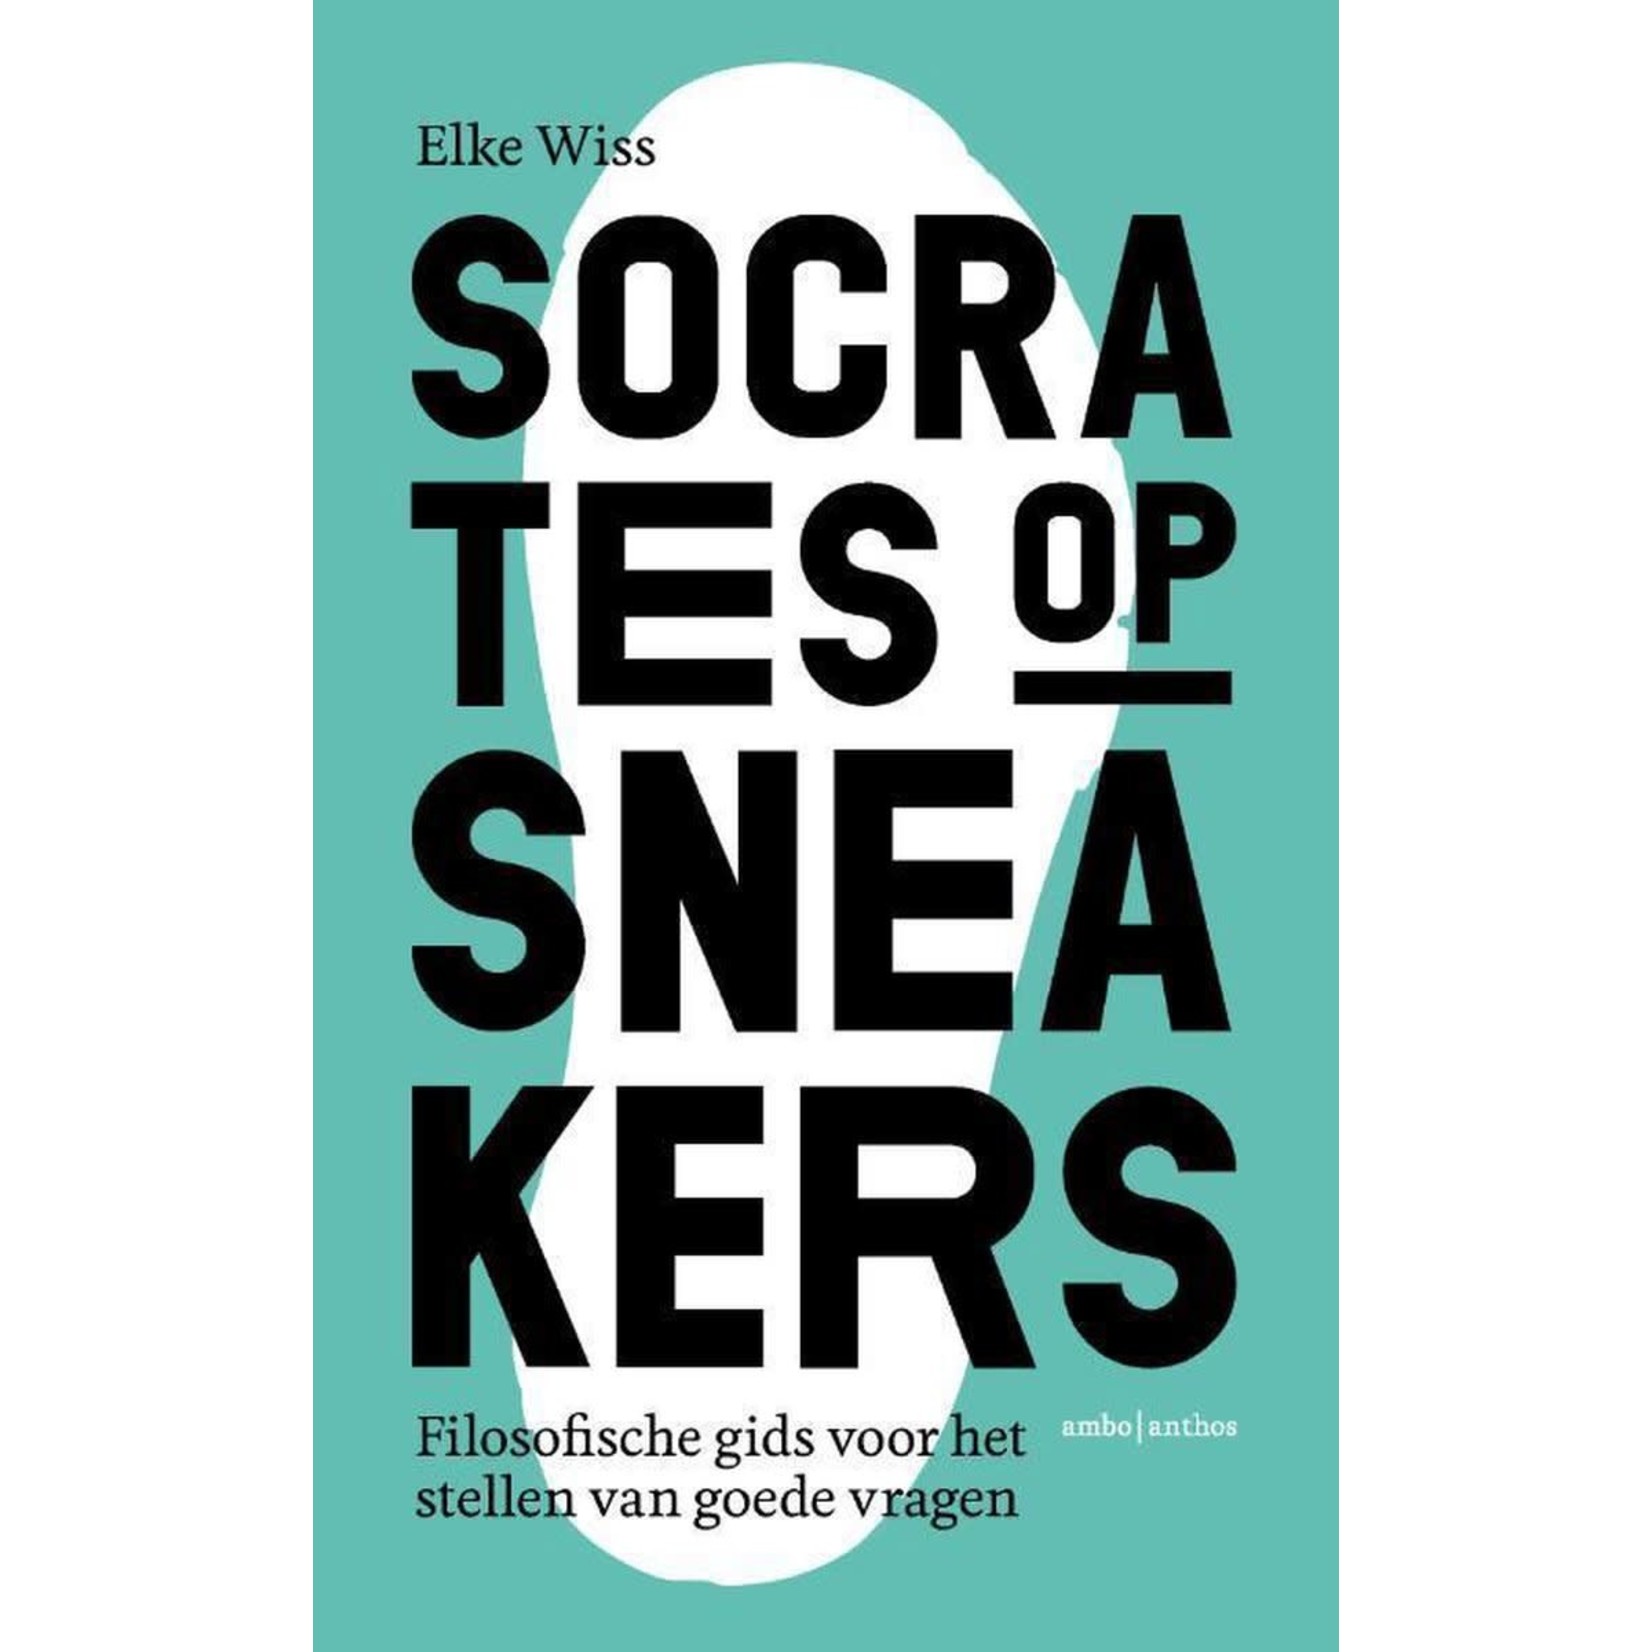 Socrates op sneakers - Filosofische gids voor het stellen van goede vragen